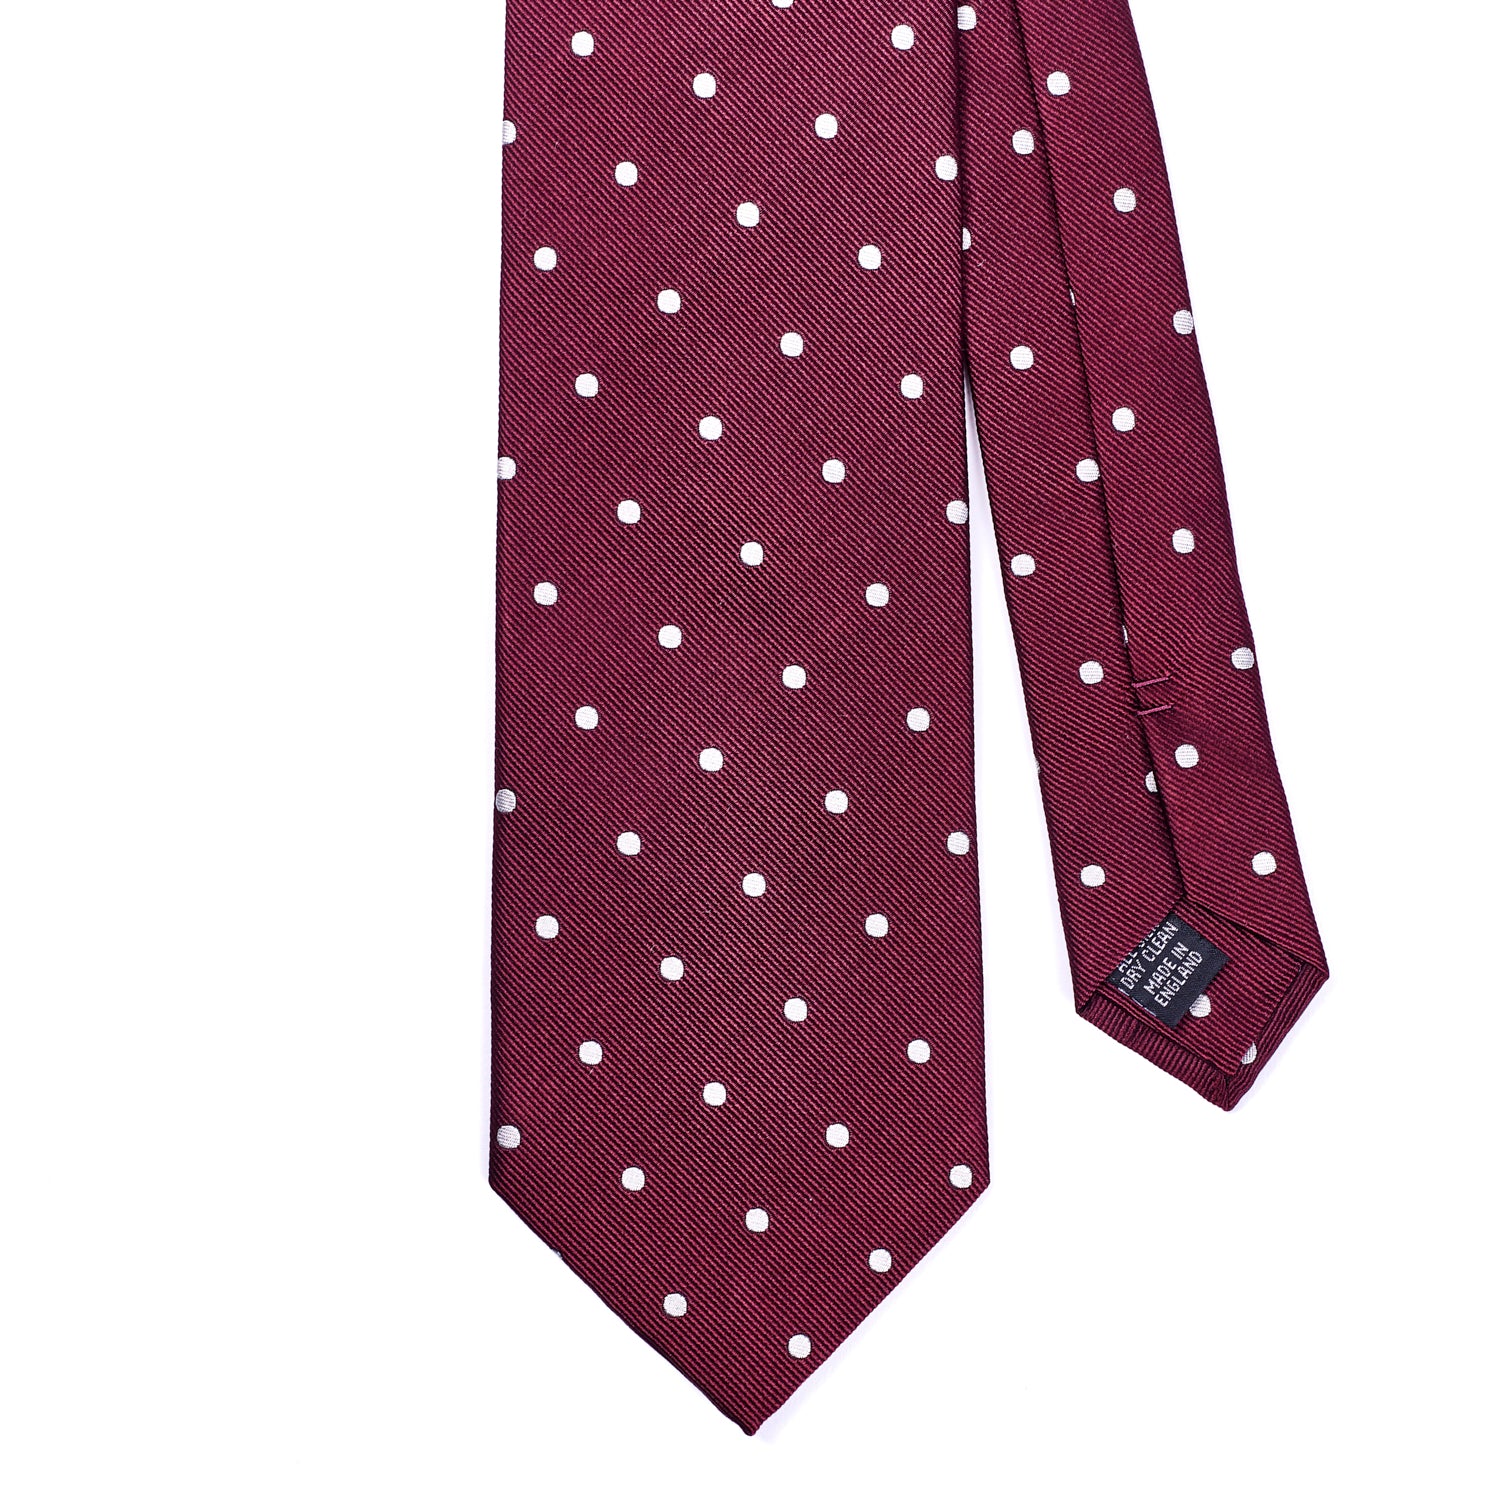 Sovereign Grade Woven Oxblood Wide Dot Tie, 150 cm | KirbyAllison.com